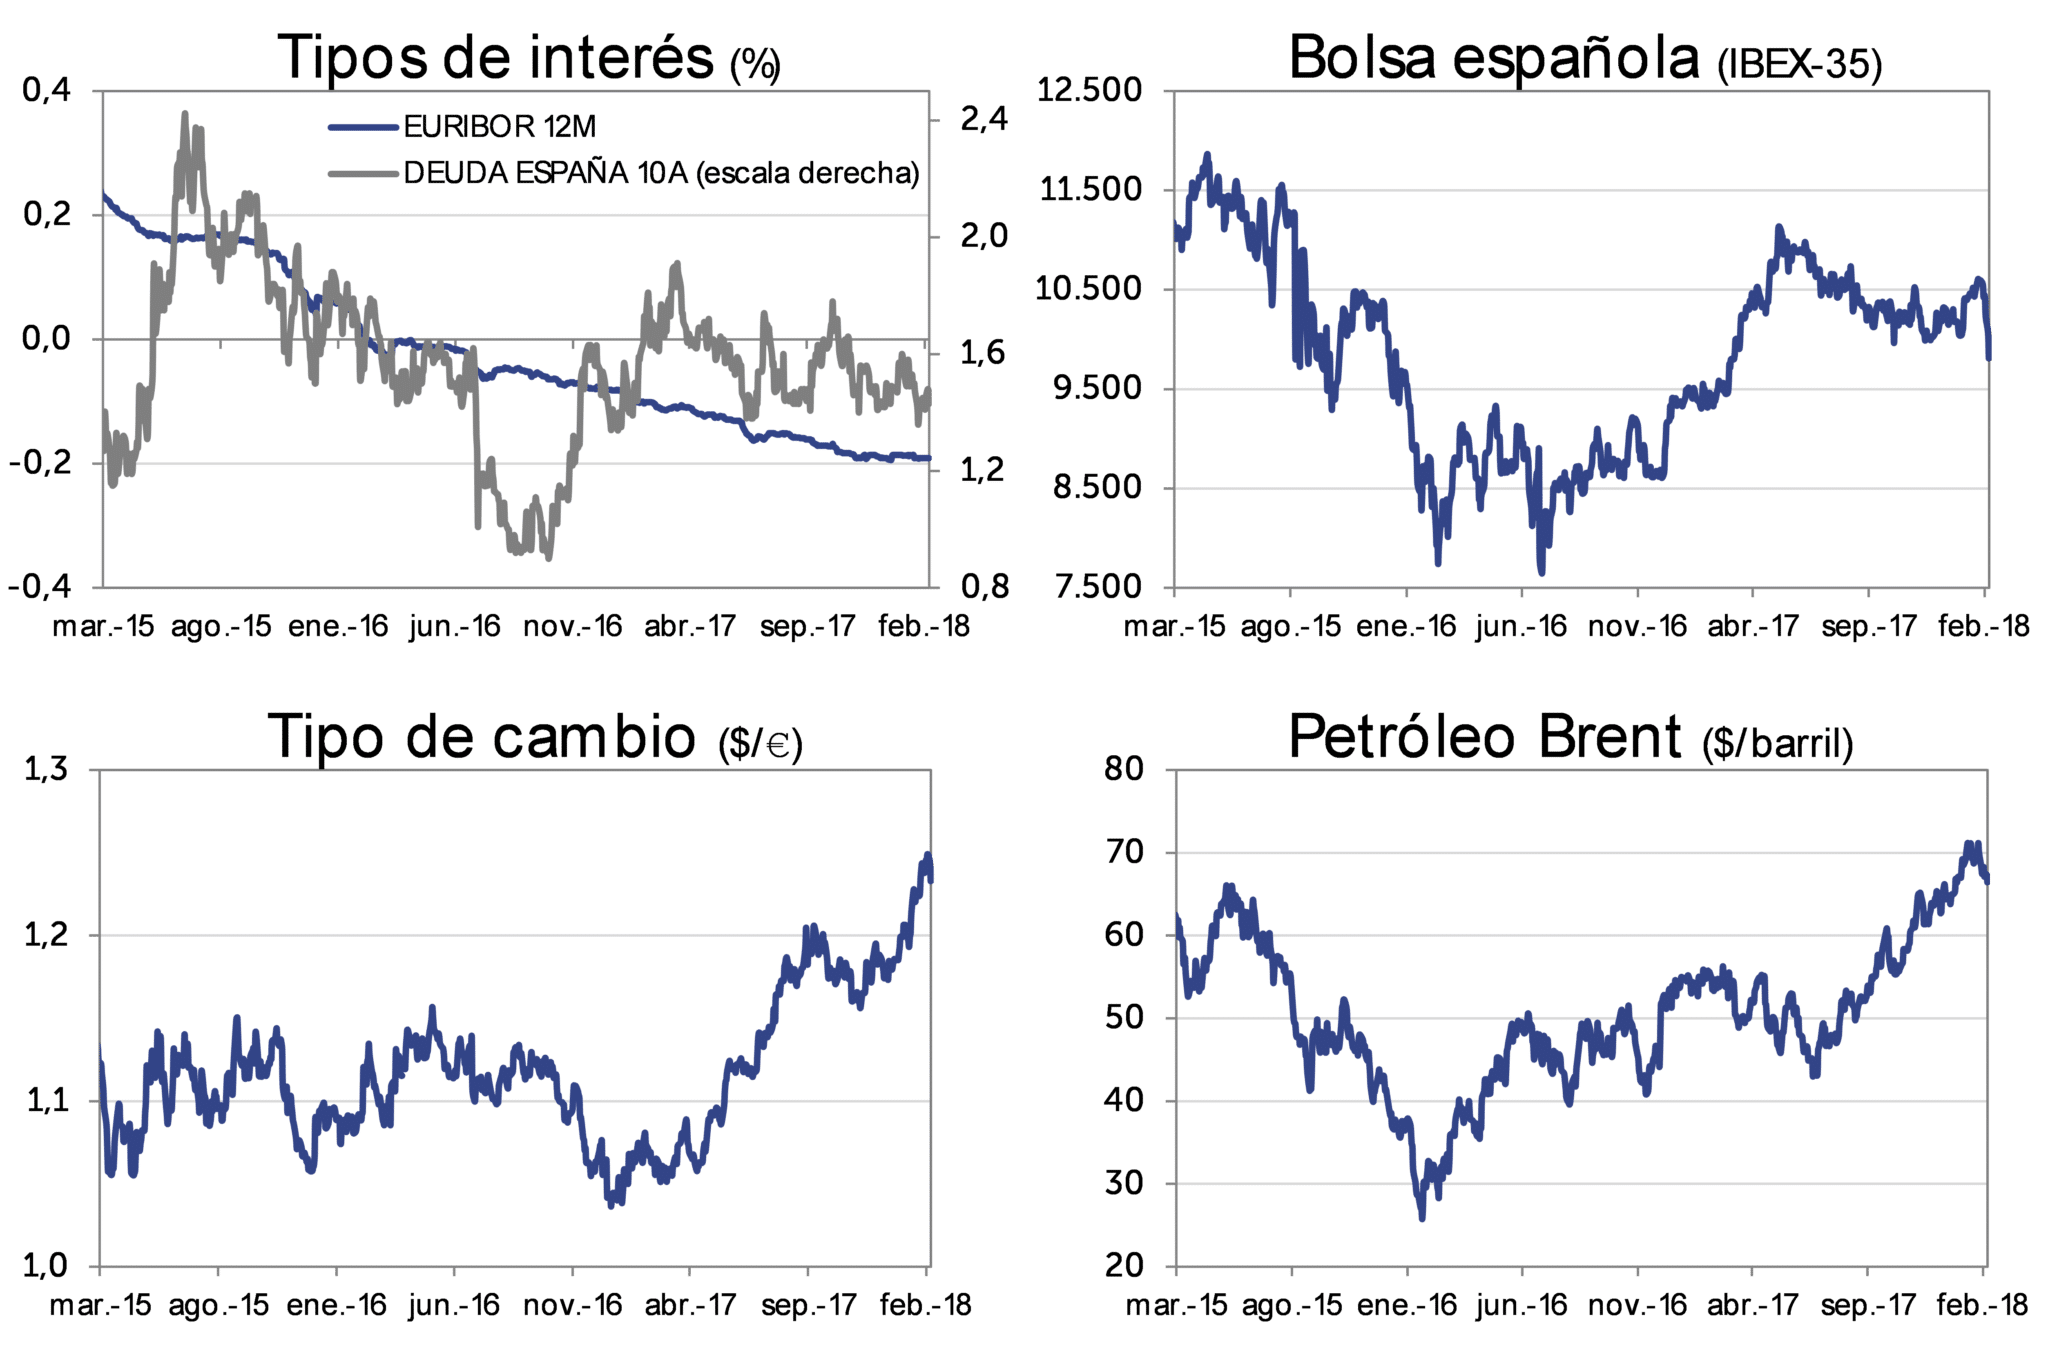 Evolución Mercado marzo-2018: Tipos de interés, bolsa española (IBEX-35), Tipo de cambio (dolar/euro), Petróleo Brent (dolar/barril)